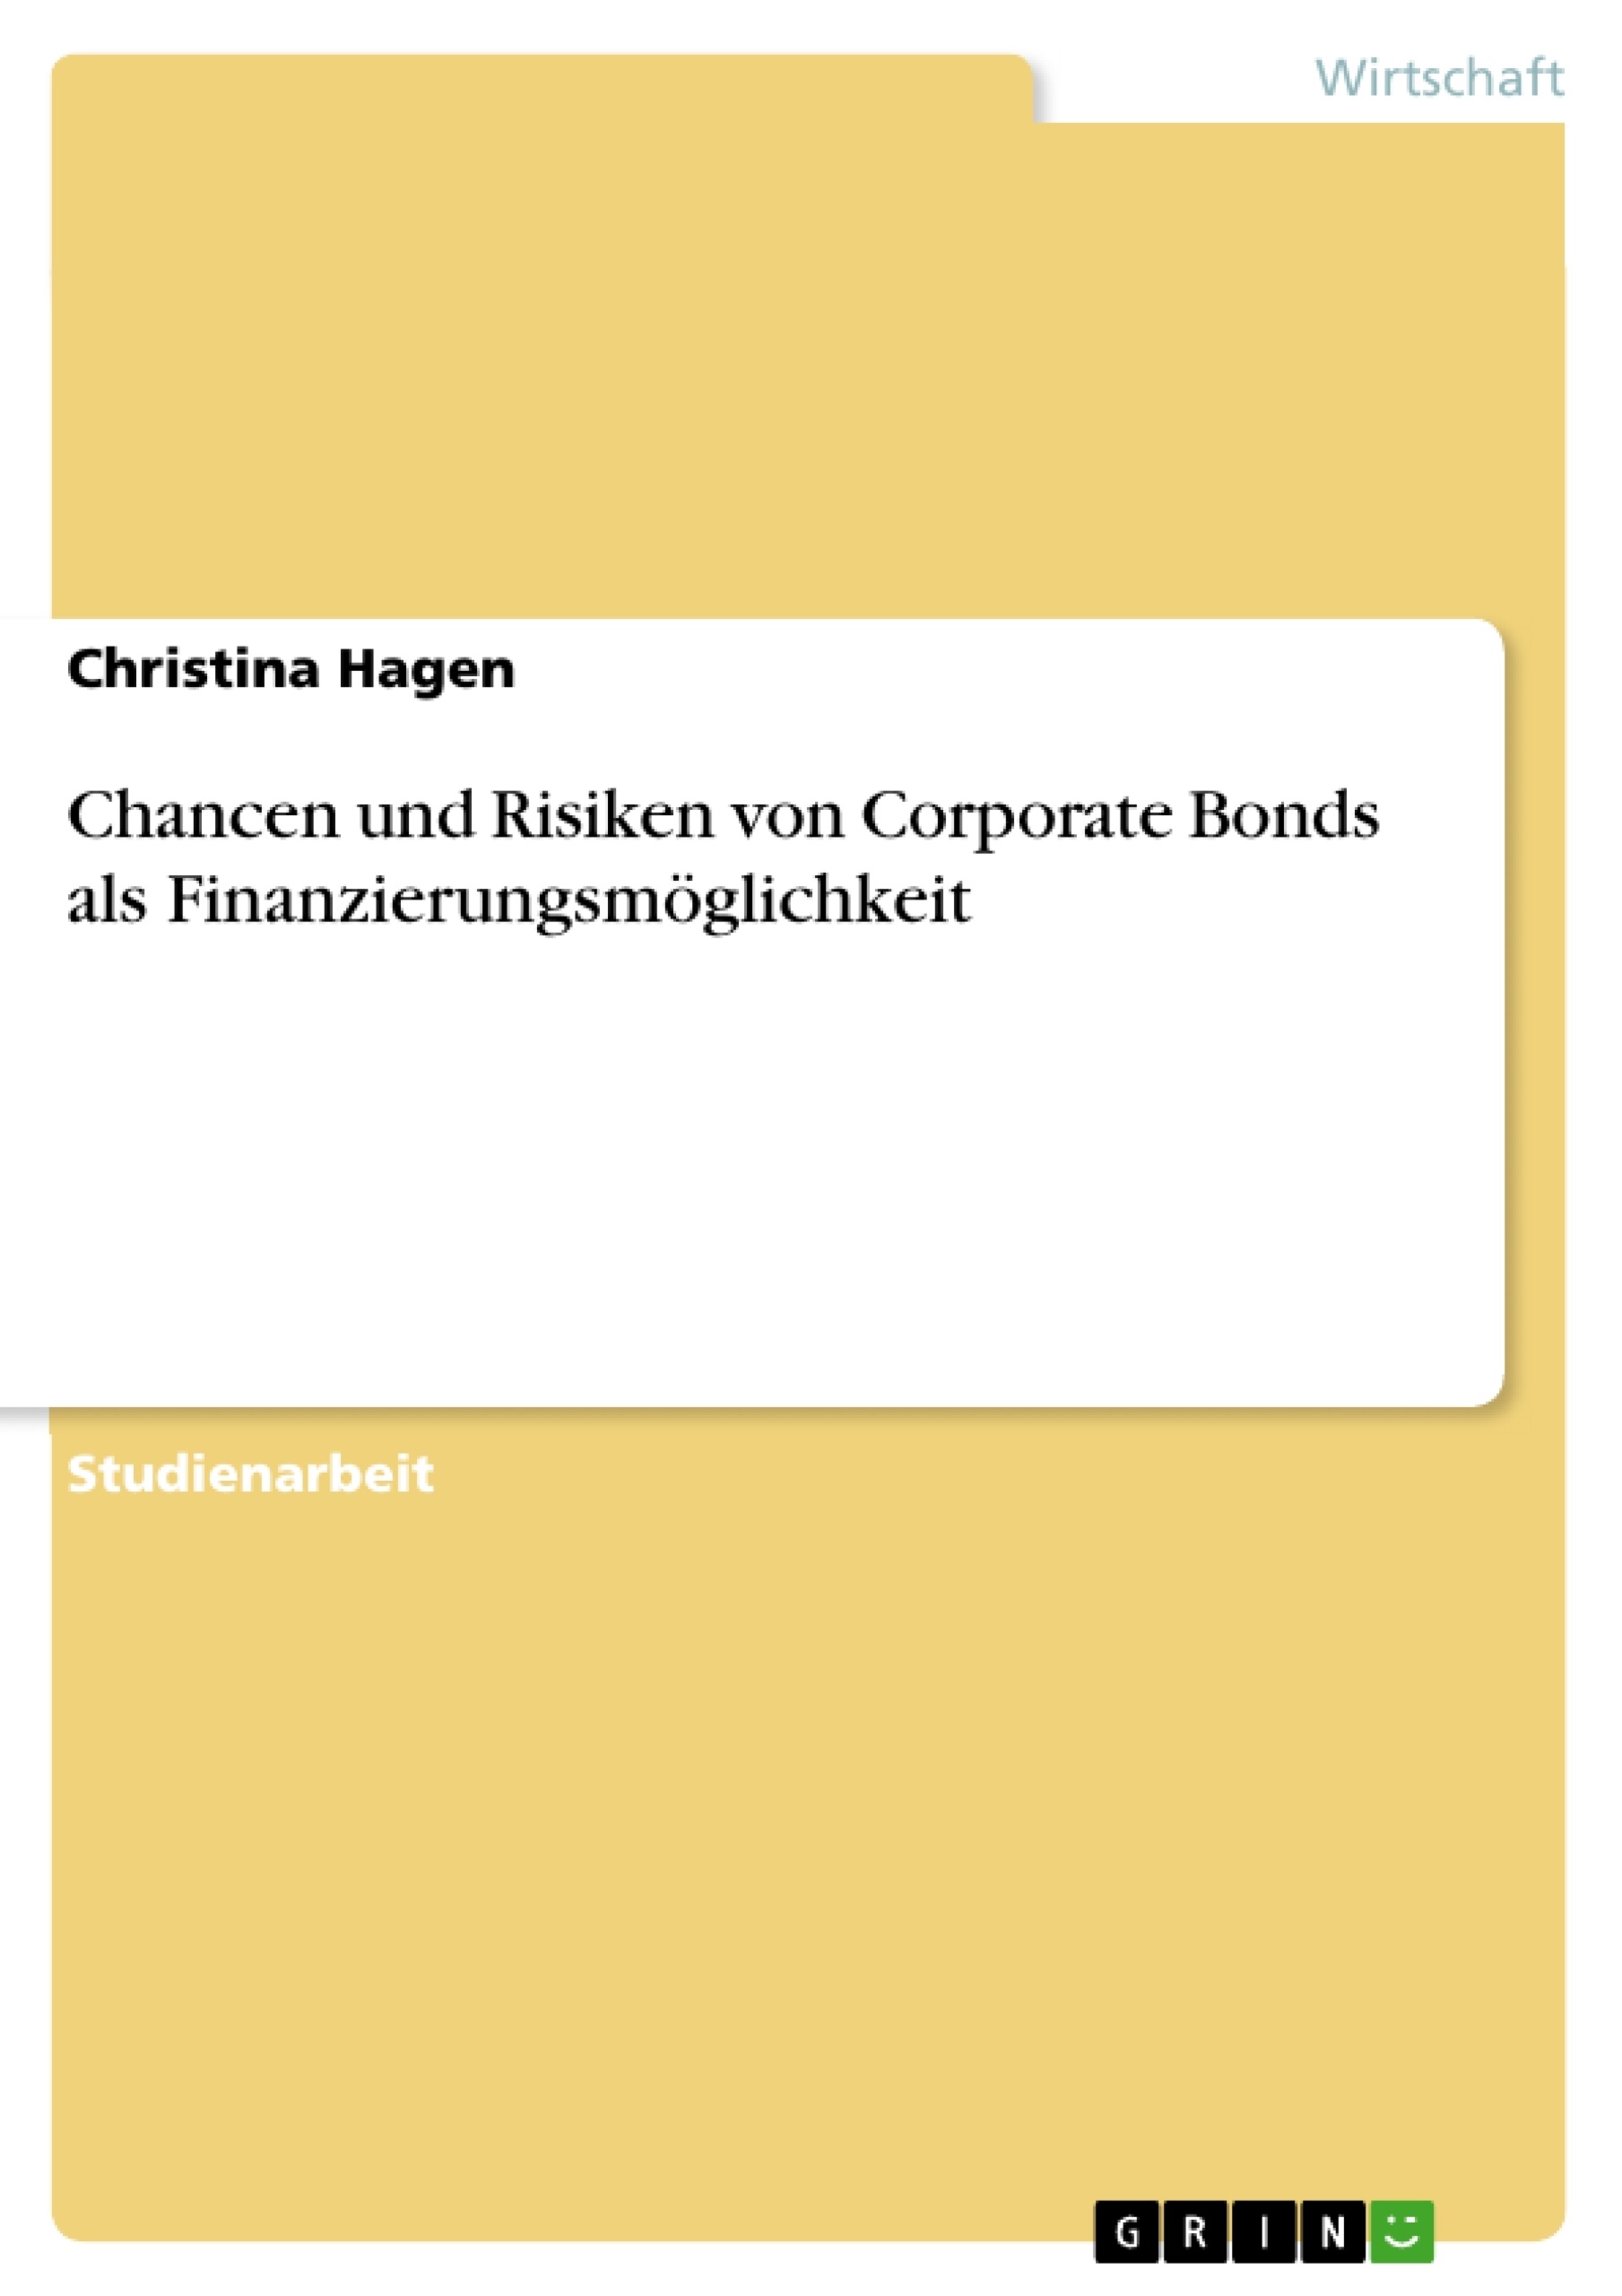 Título: Chancen und Risiken von Corporate Bonds als Finanzierungsmöglichkeit